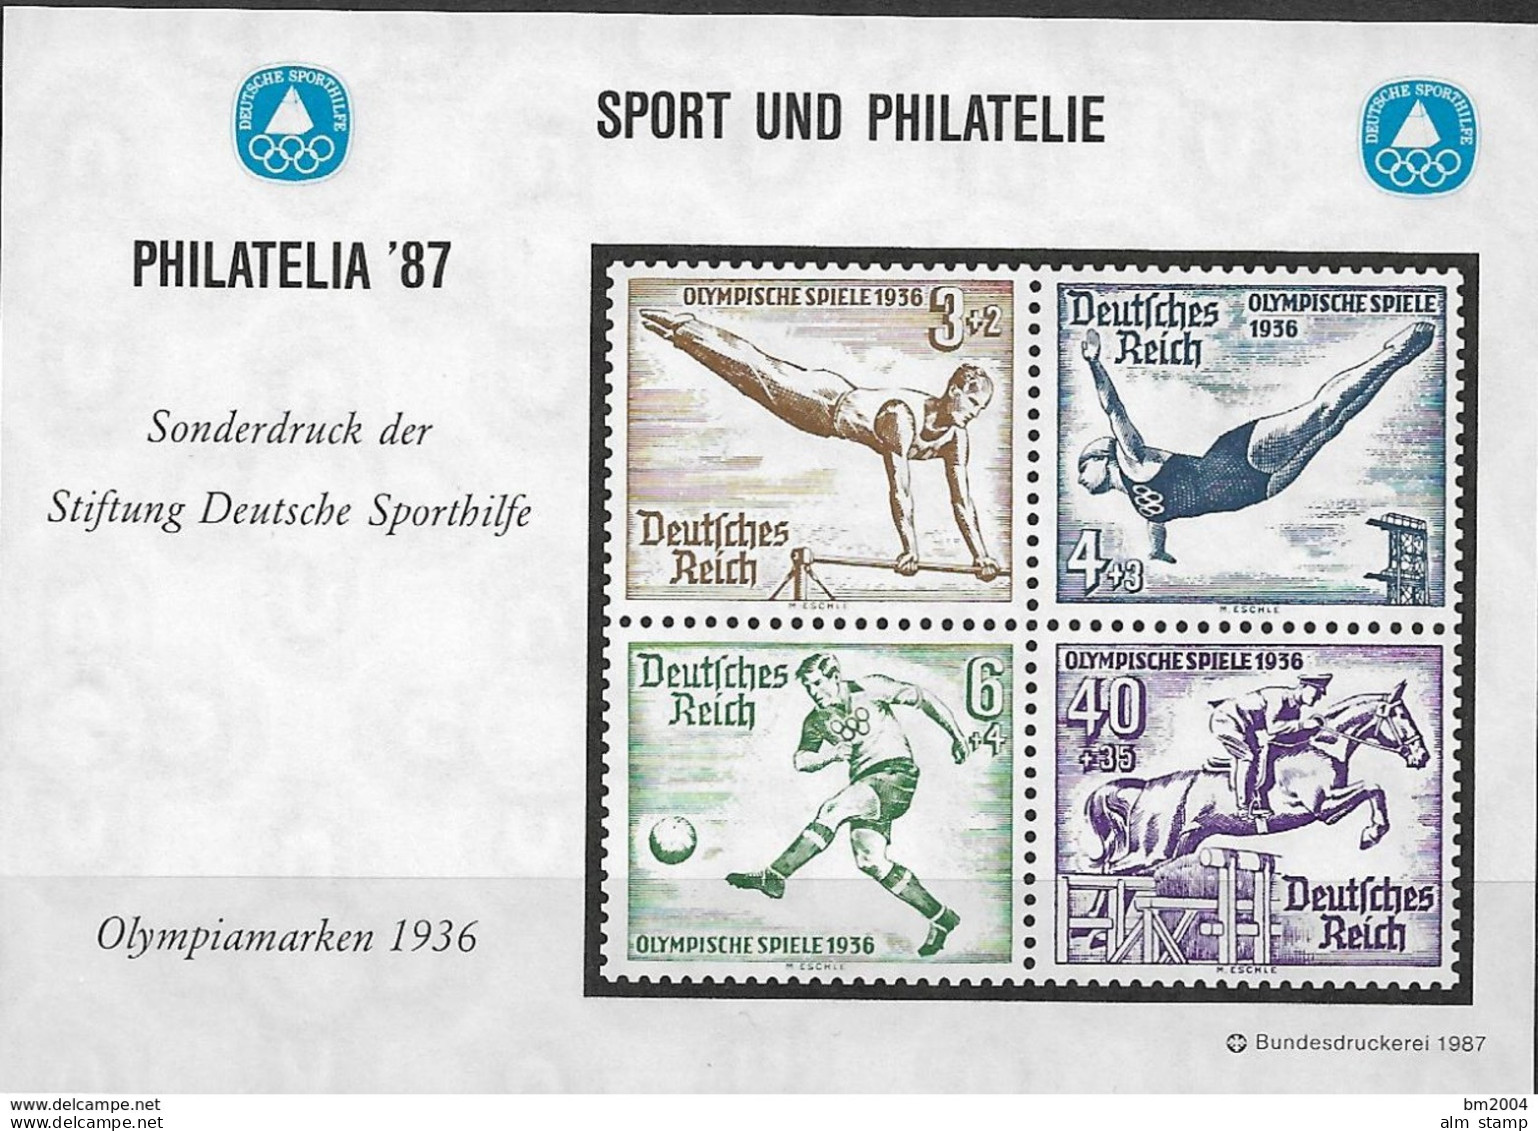 1987 Deutschland Vignette  PHILATELIA '87  " OLYMPIAMARKEN 1936 - Estate 1936: Berlino